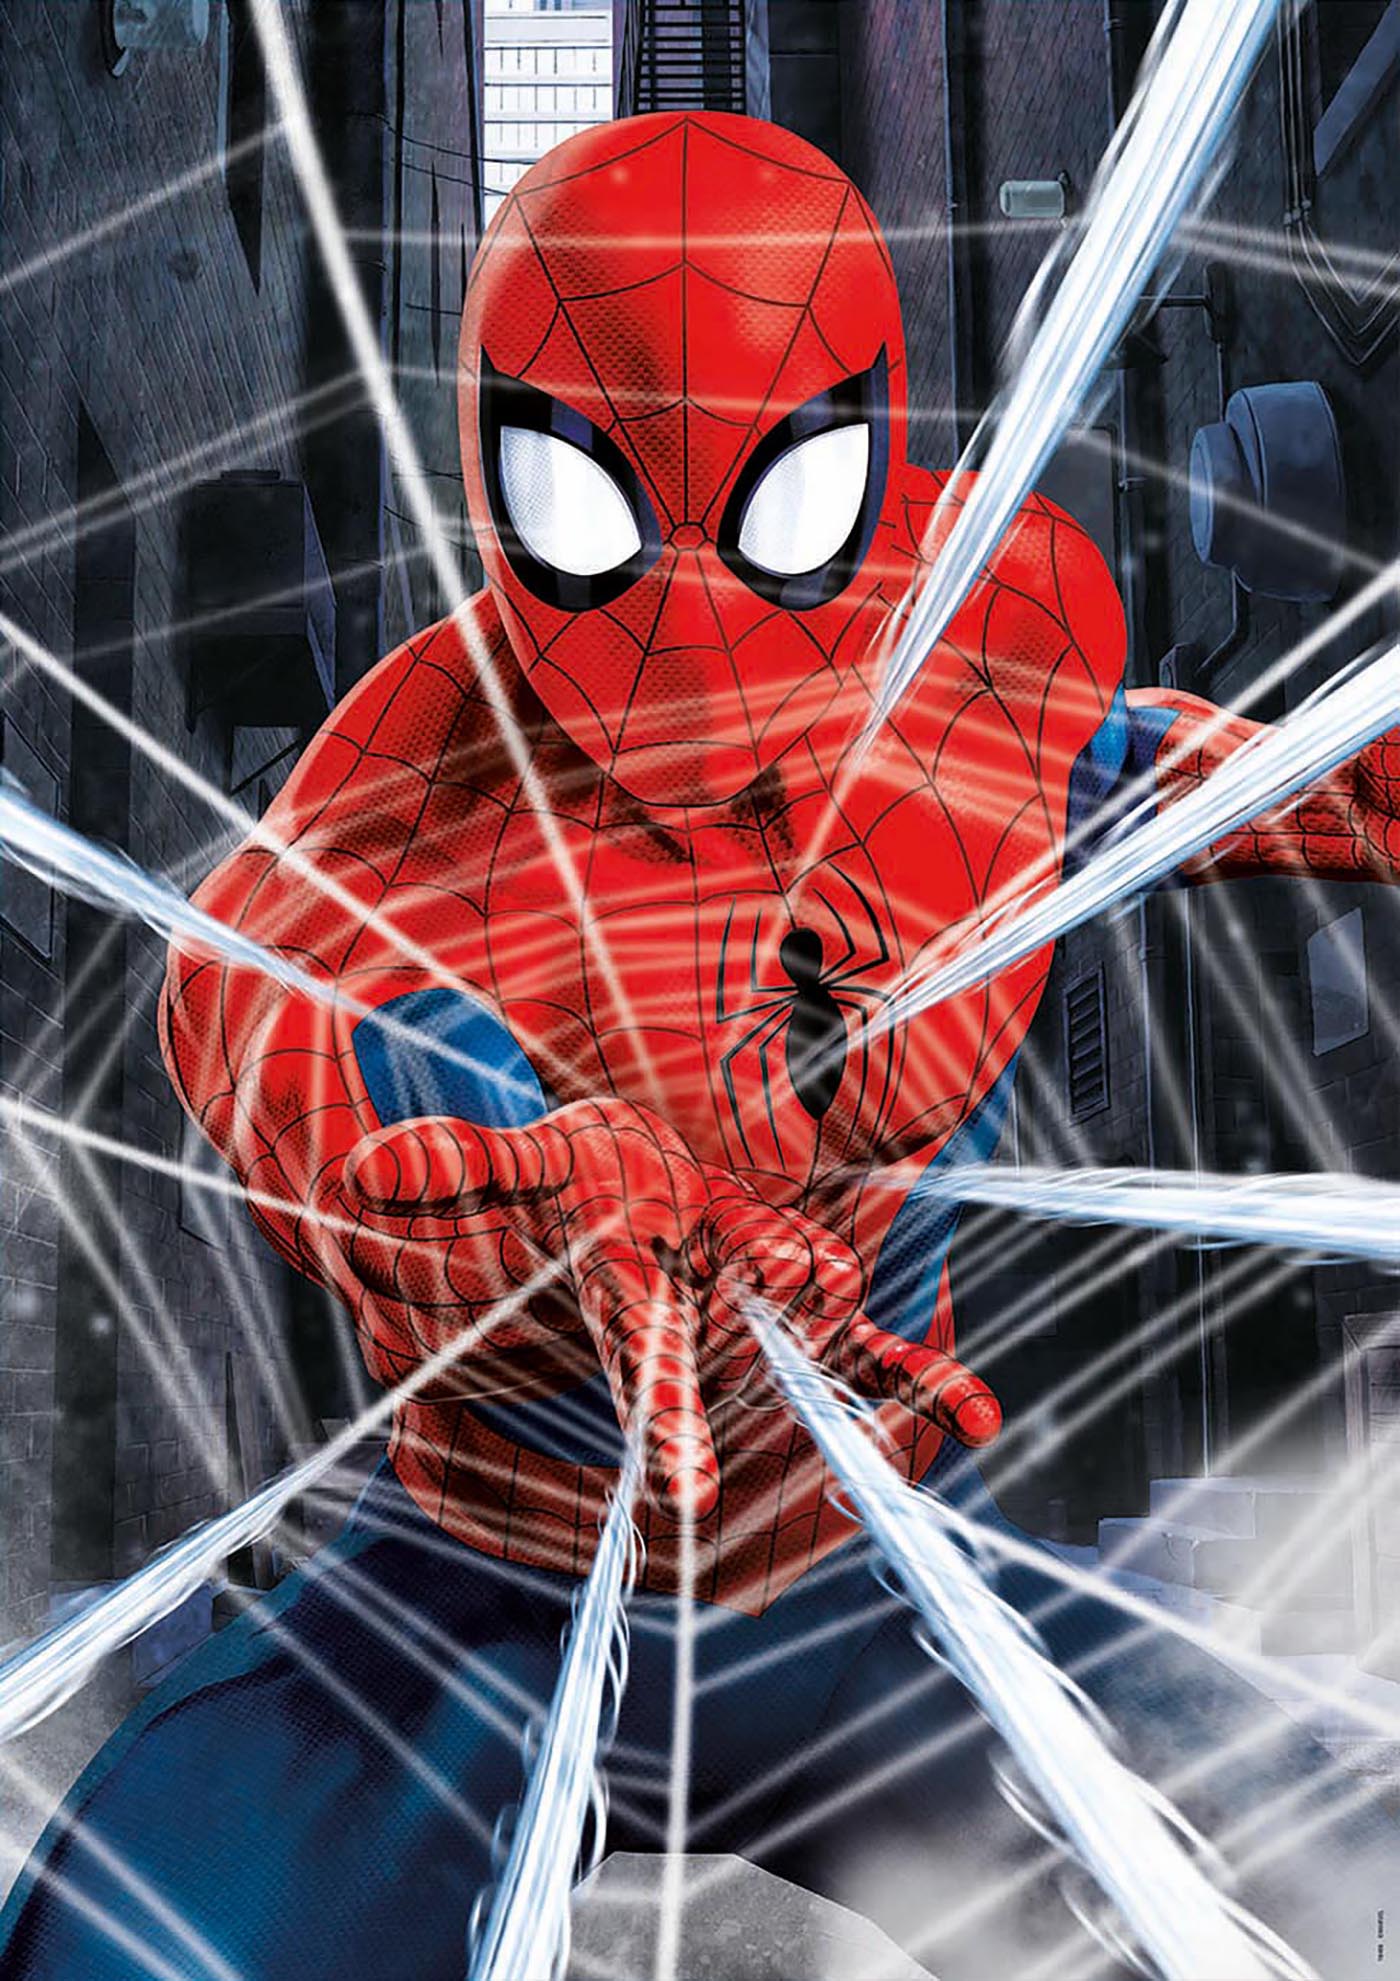 500 Spider-Man - Educa Borras